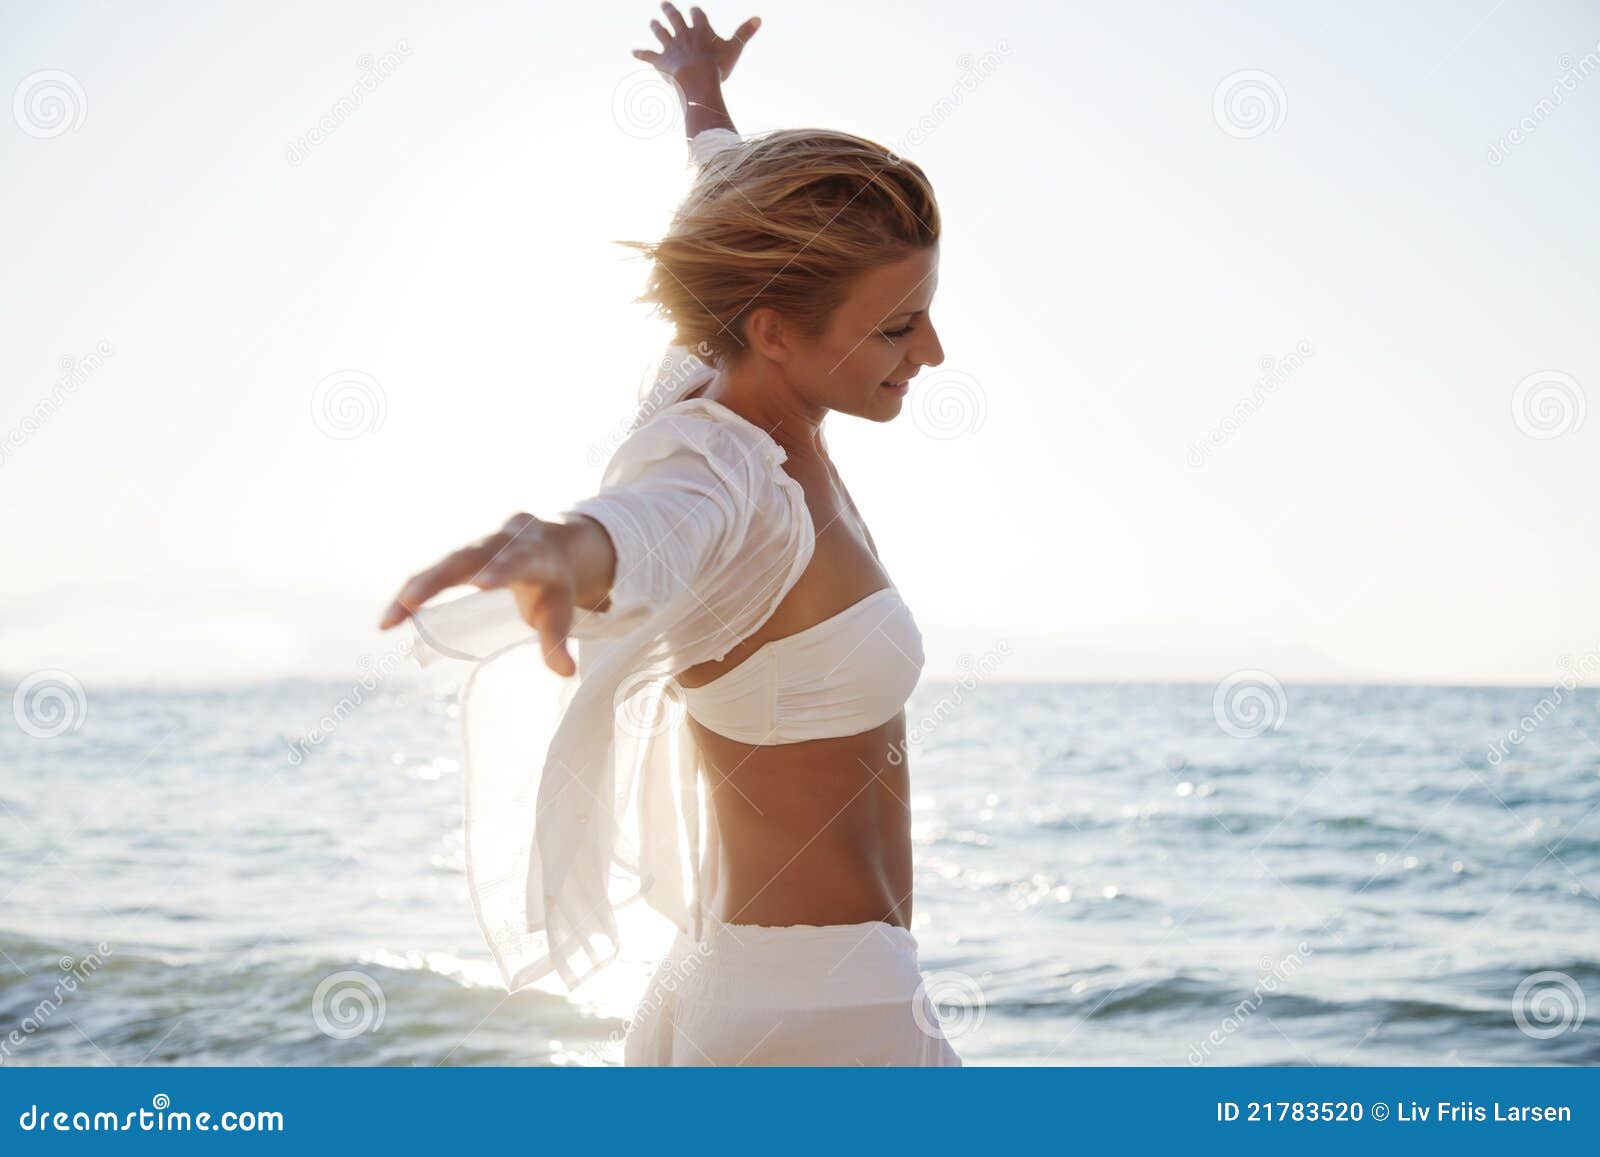 Freiheit. Sorglose junge Frau auf einem windigen Strand